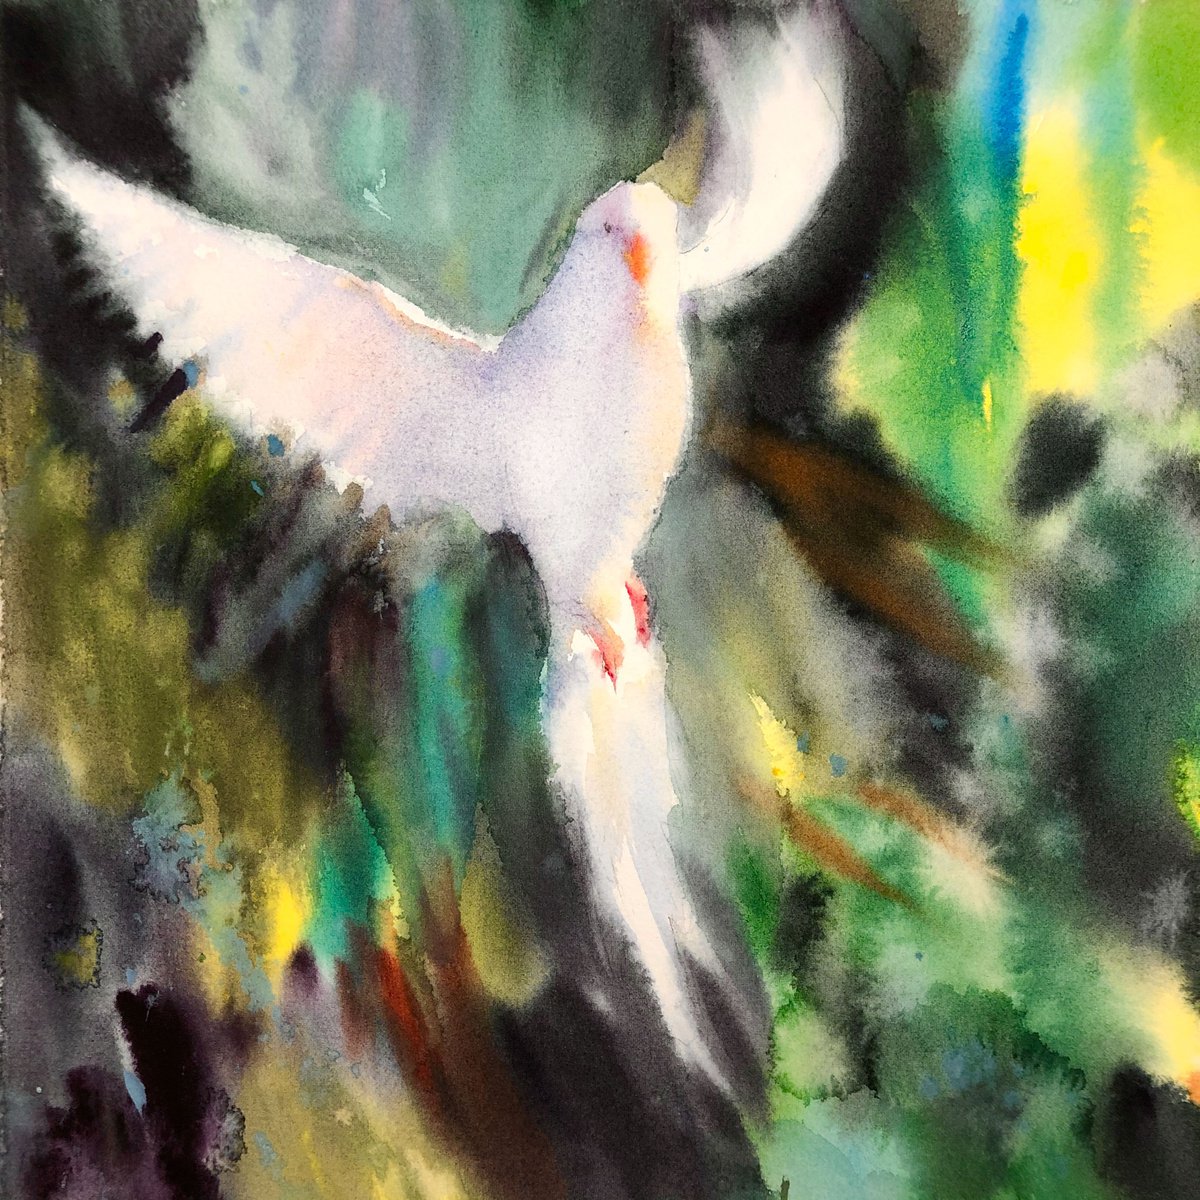 Fly to freedom by Olga Kholodova